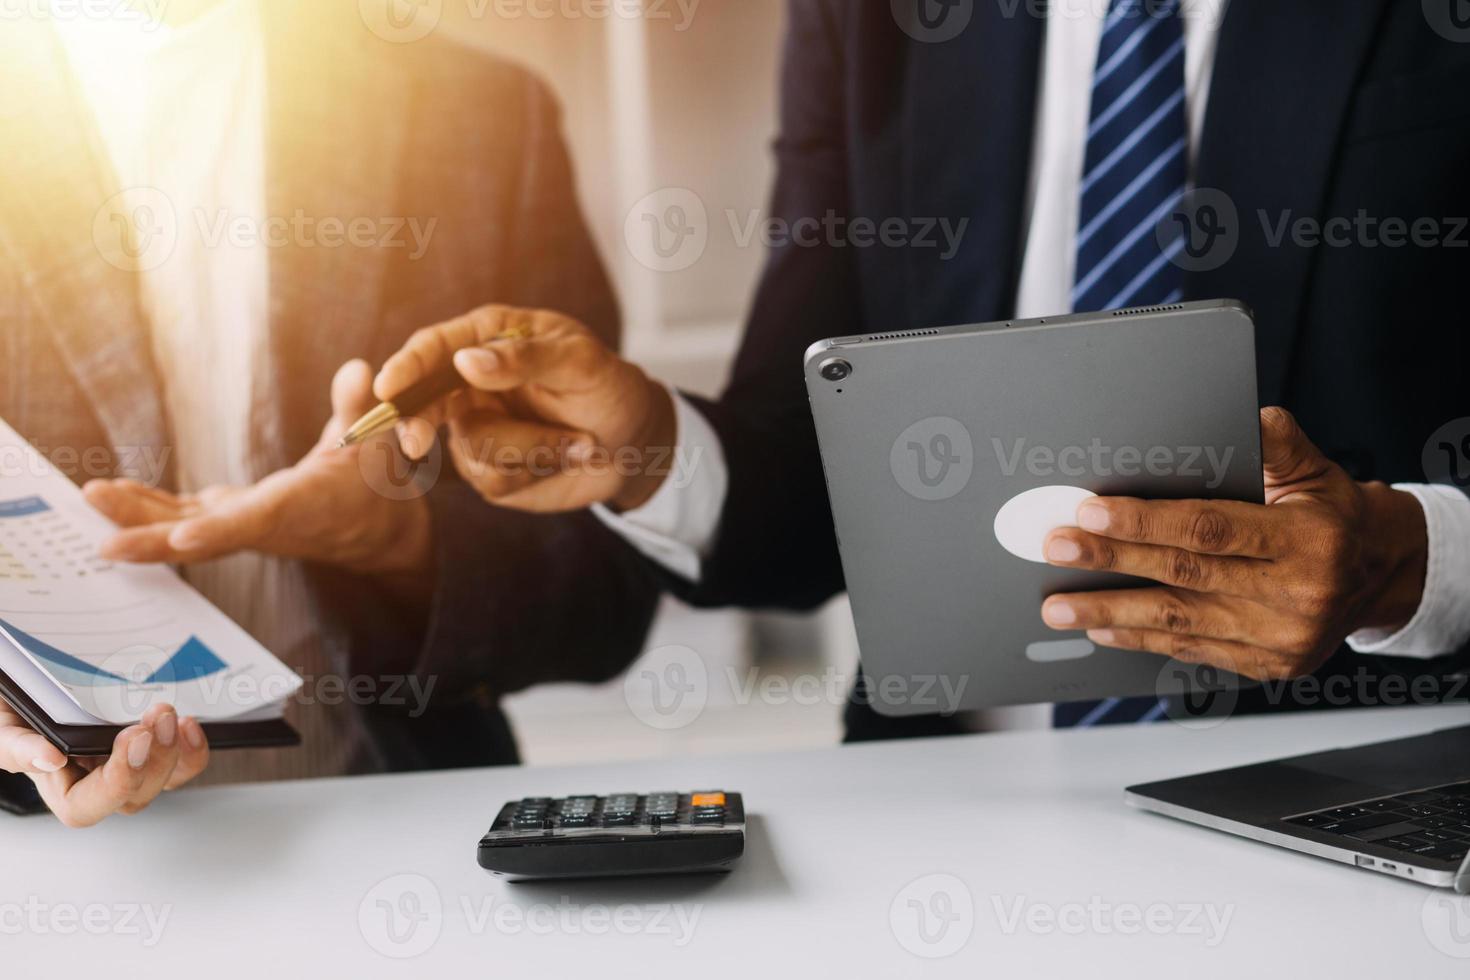 analistas financeiros analisam relatórios financeiros de negócios em um projeto de investimento de planejamento de tablet digital durante uma discussão em uma reunião de empresas mostrando os resultados de seu trabalho em equipe bem-sucedido. foto